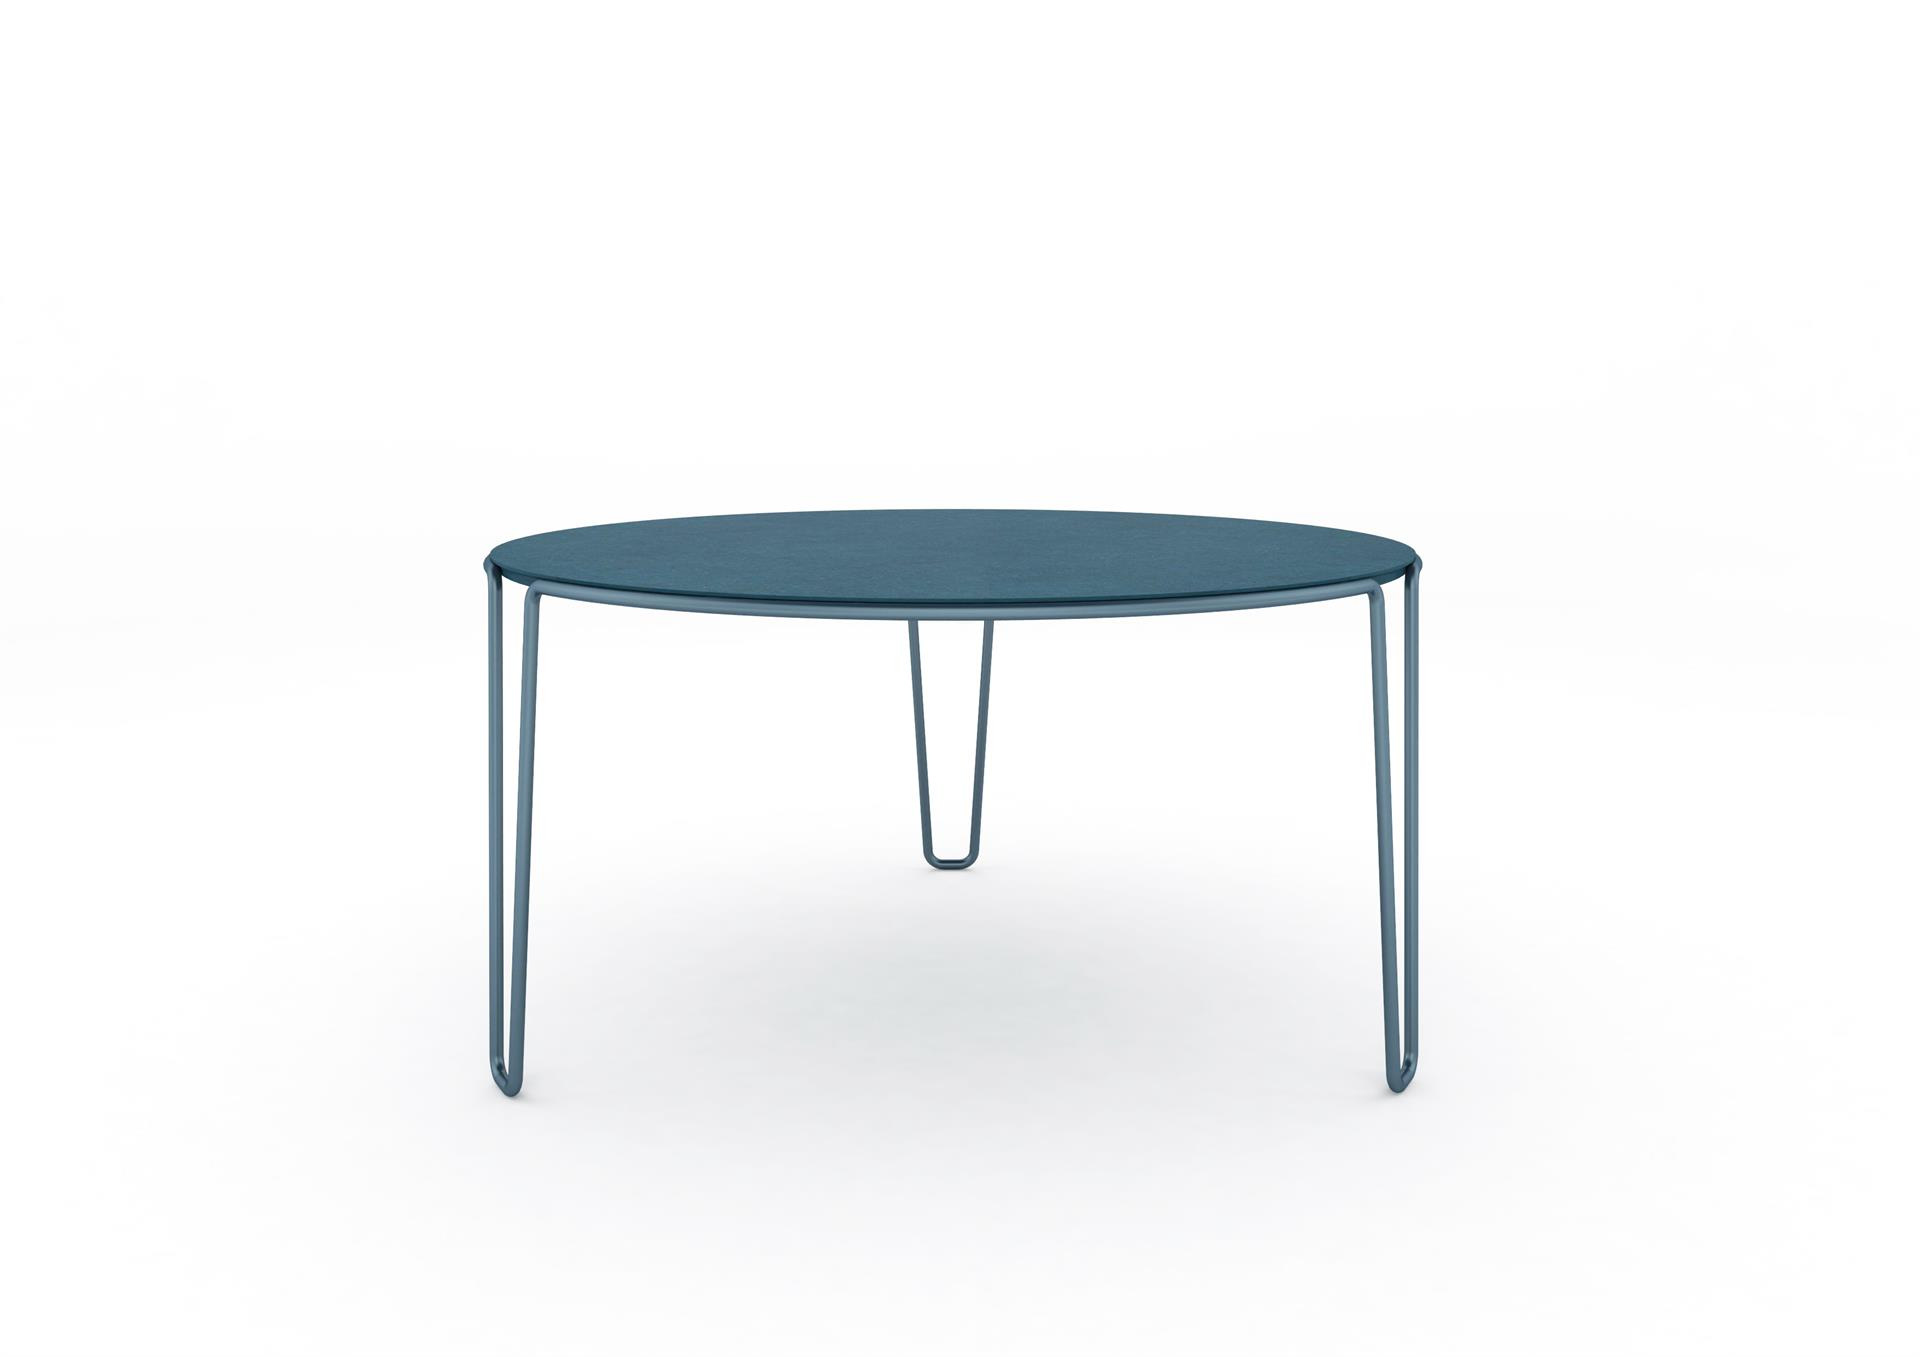 A Baleri Italia apresenta uma nova família de mesas projetada por Baldessari and Baldessari, um produto que combina design e versatilidade. Projetada para atender às diferentes necessidades dos ambientes contemporâneos, tanto de vida como de escritório, a mesa é formada por uma linha contínua, composta por um tubo de metal de seção circular, que "desdobra" e desenha a estrutura da peça; um "fio de Ariadne", sem interrupção, que na perna é estendido e abre em forma de "V".